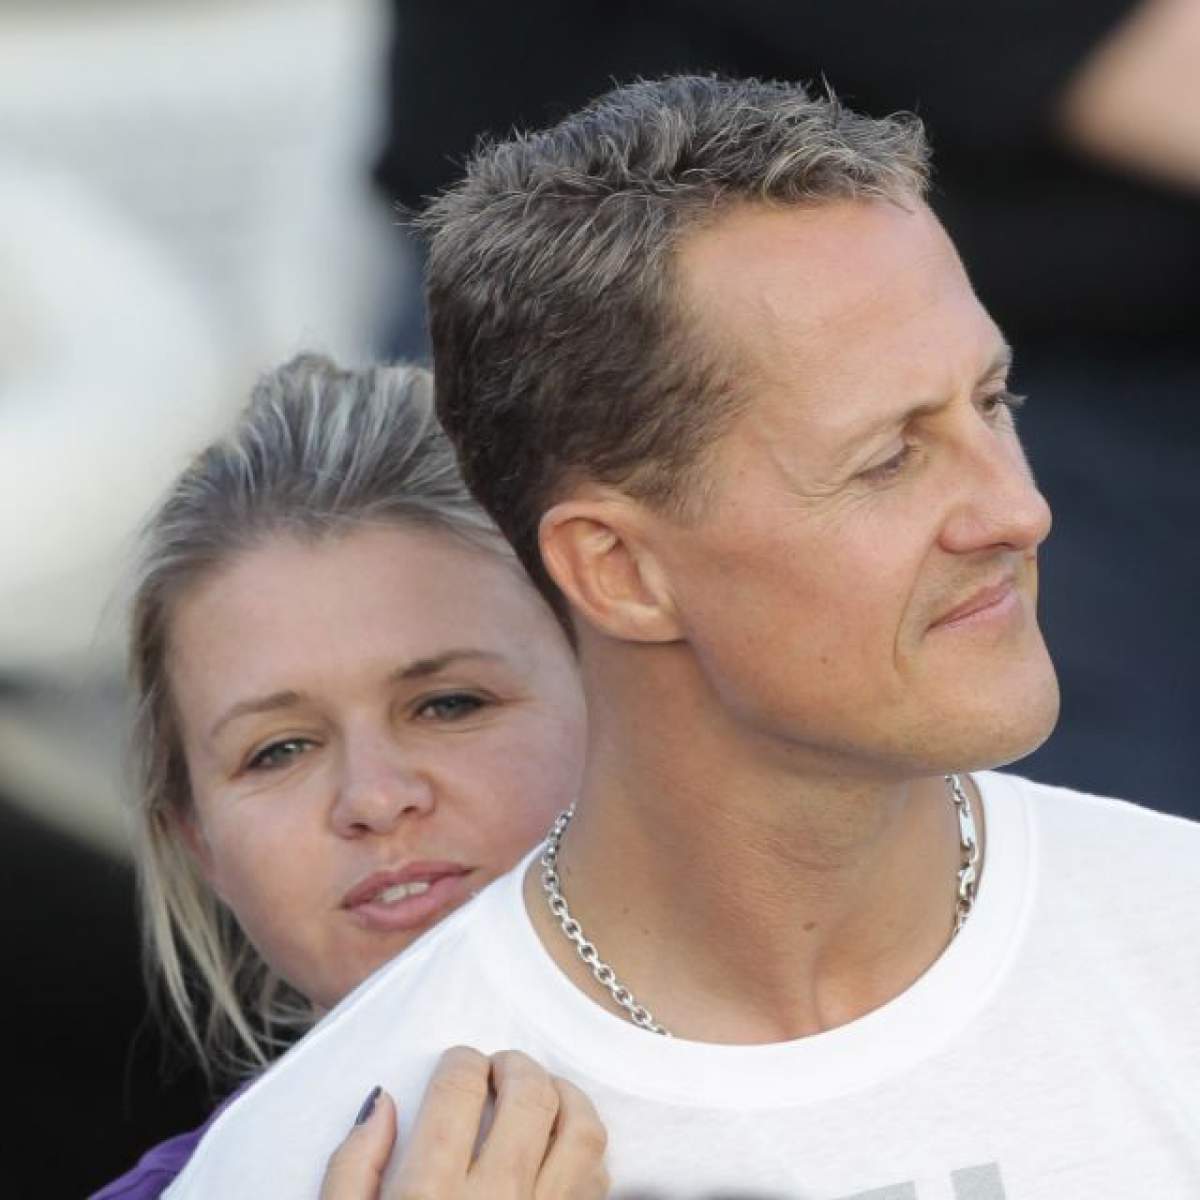 Veşti noi despre Michael Schumacher! Care mai este starea de sănătate a pilotului de Formula 1?